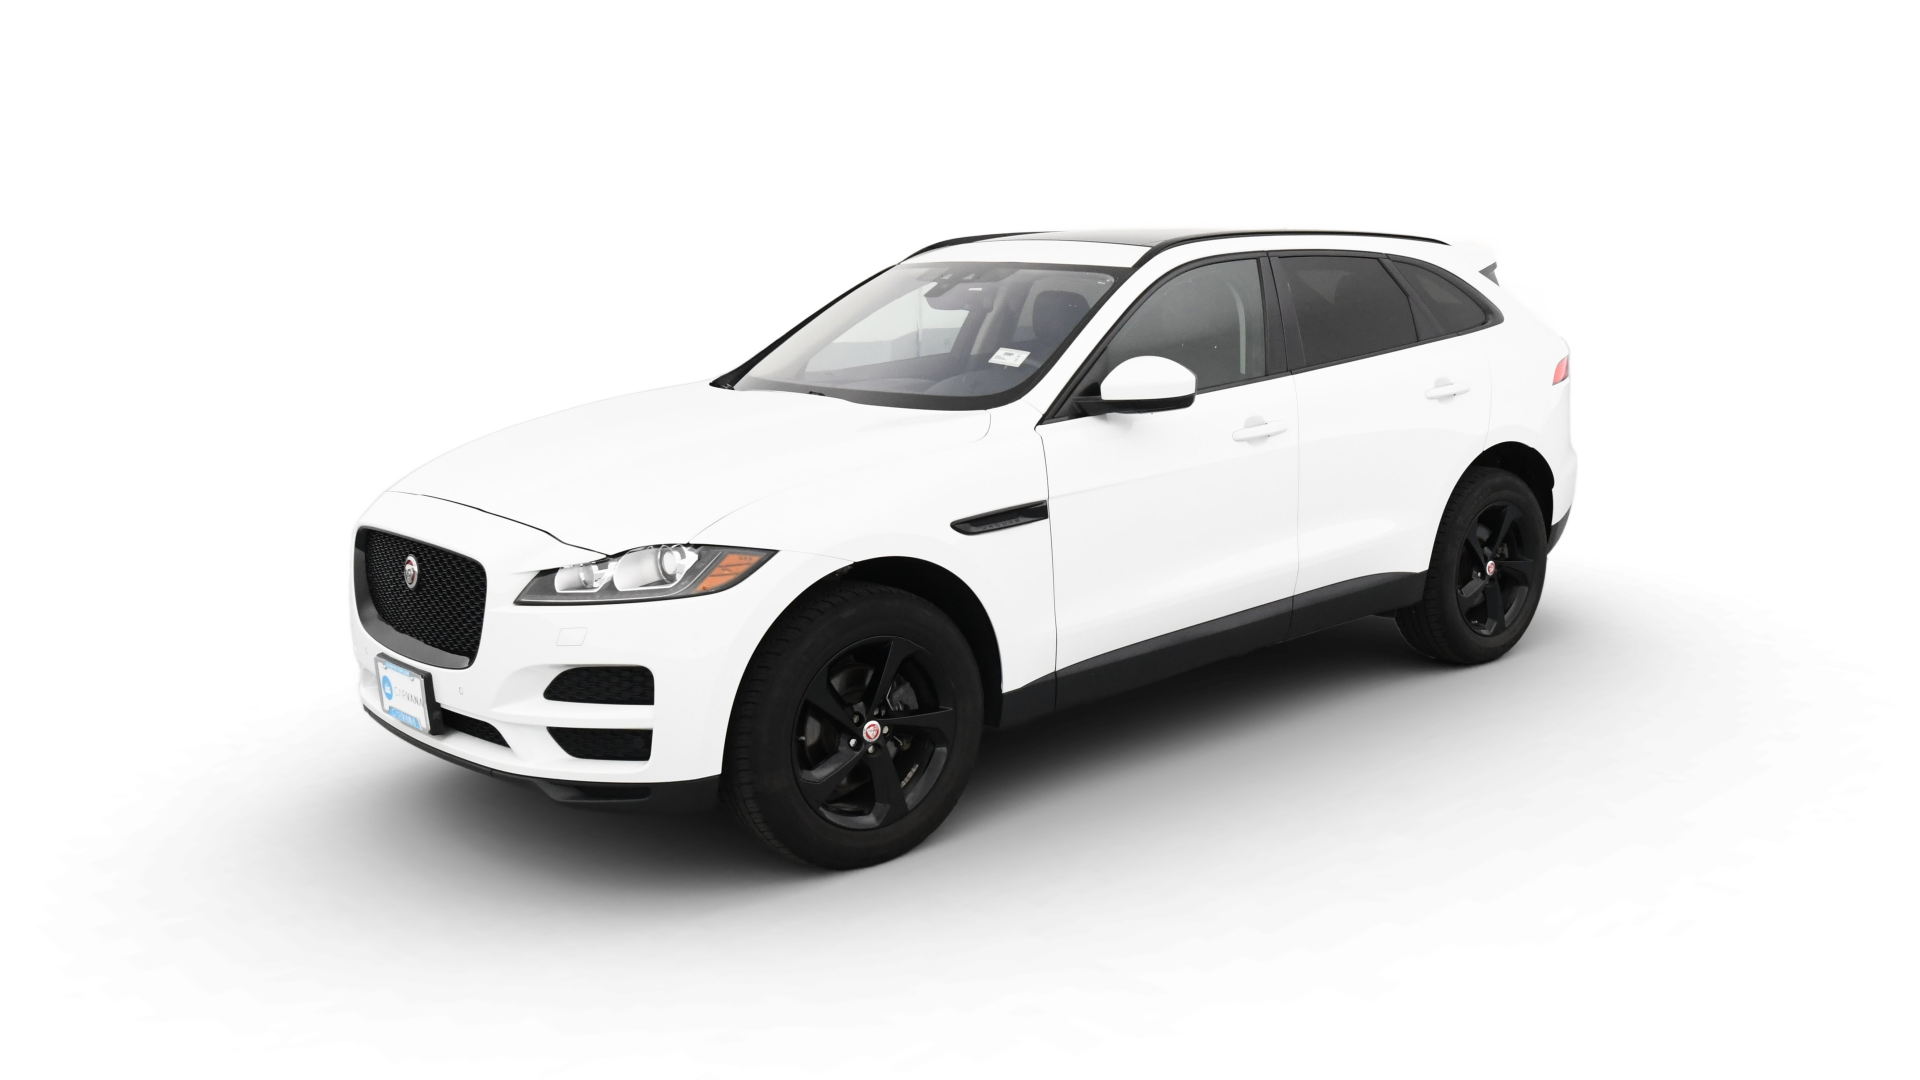 Jaguar F-PACE model image.